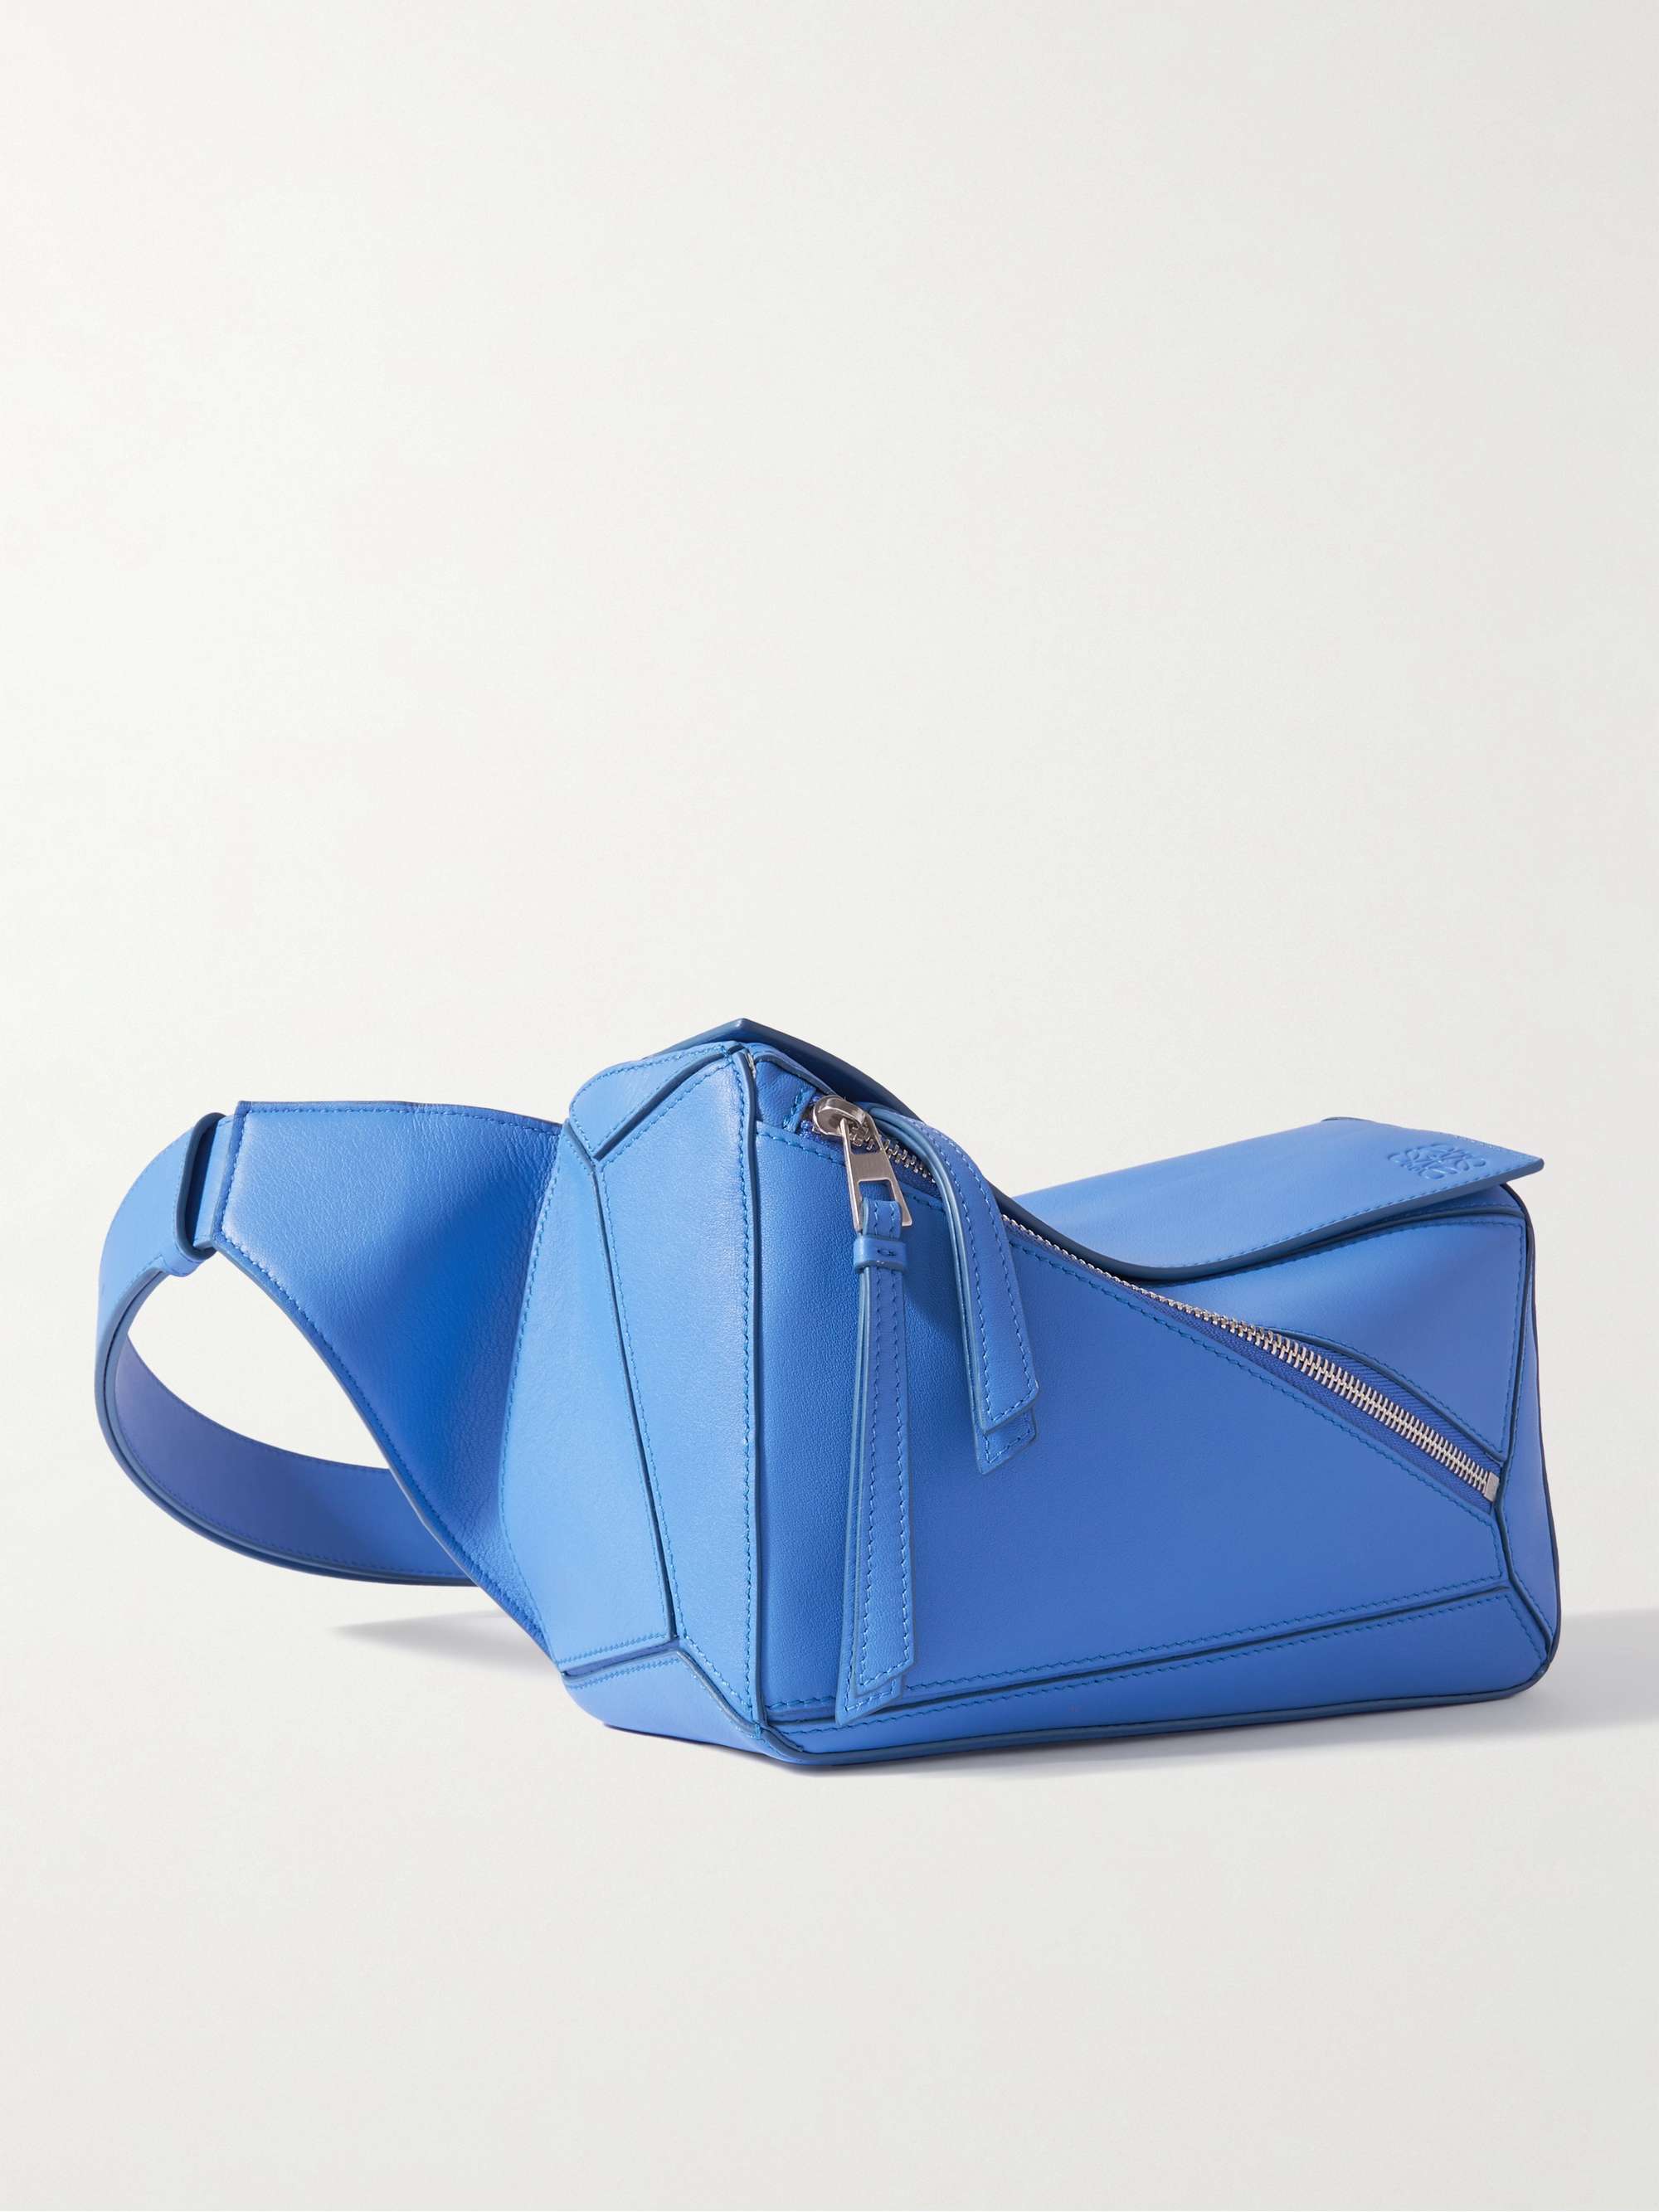 Loewe Small Puzzle Bag, One Size | Elysewalker